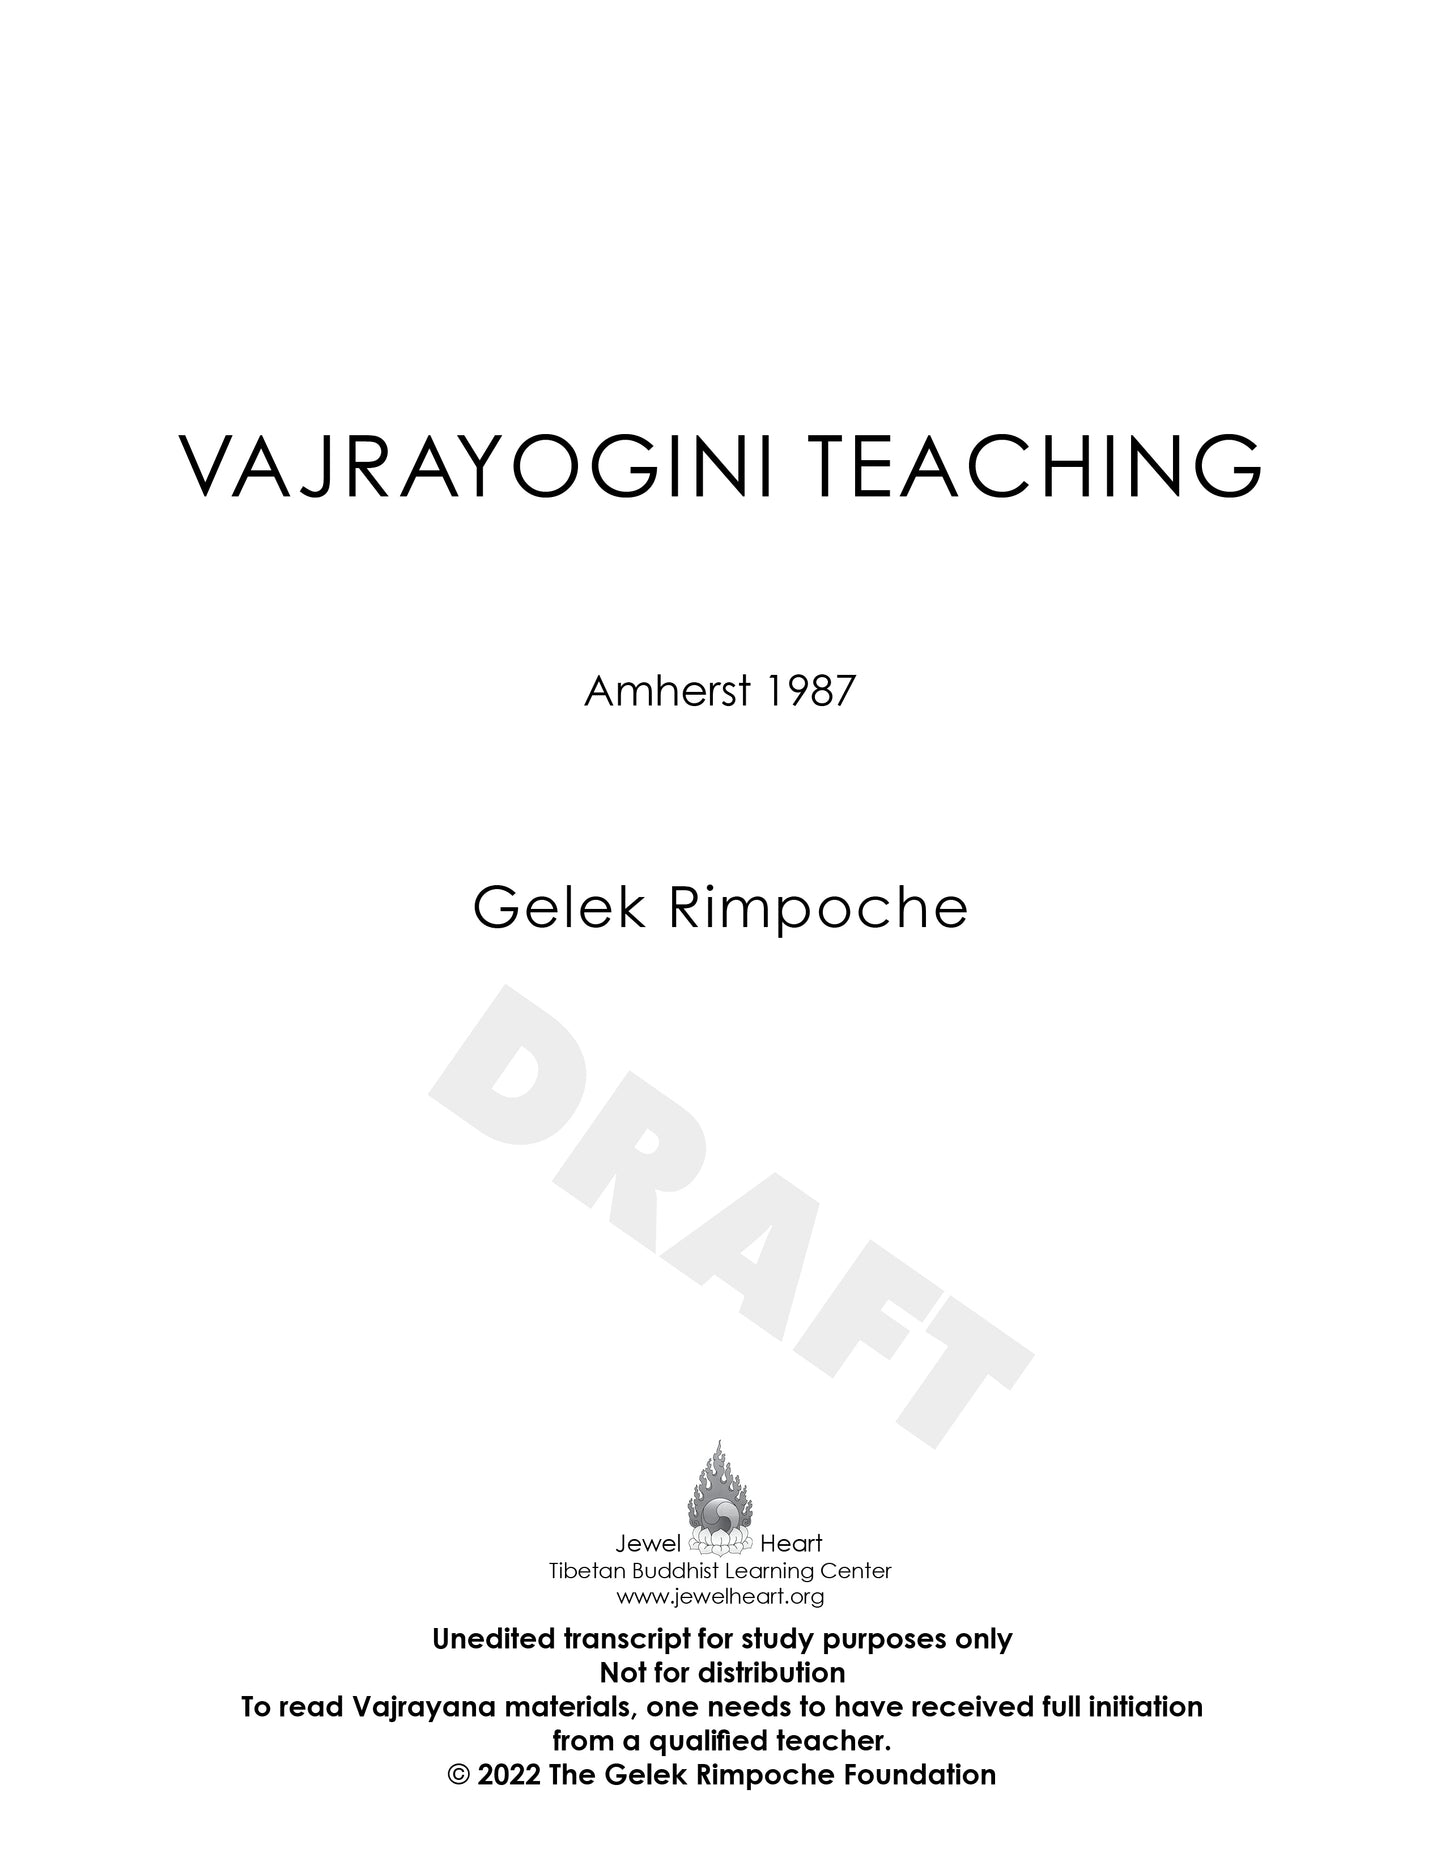 Vajrayogini Teaching - Amherst 1987